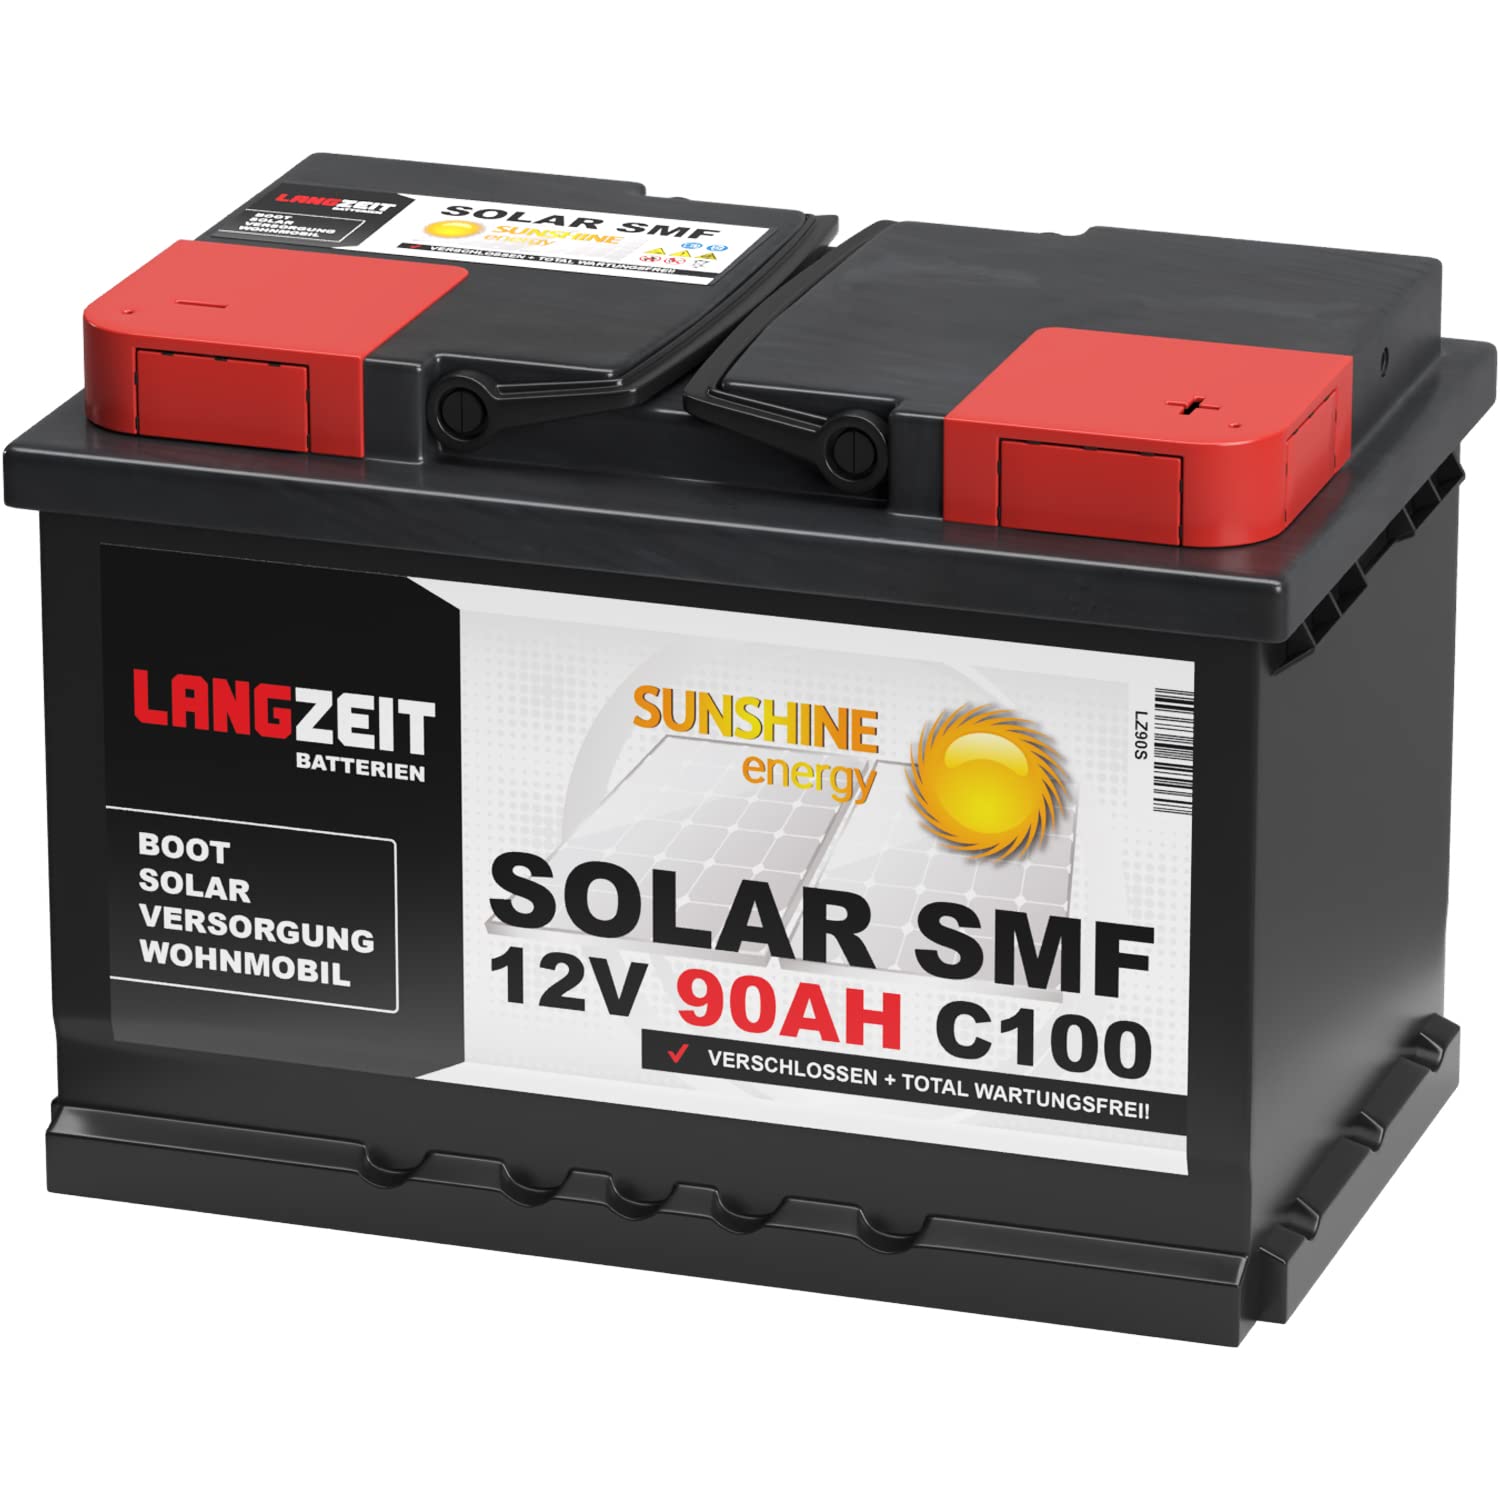 Langzeit Solar SMF Solarbatterie 90Ah 12V Versorgungsbatterie Wohnmobil Batterie Boot total wartungsfrei 70Ah 80Ah von LANGZEIT Batterien